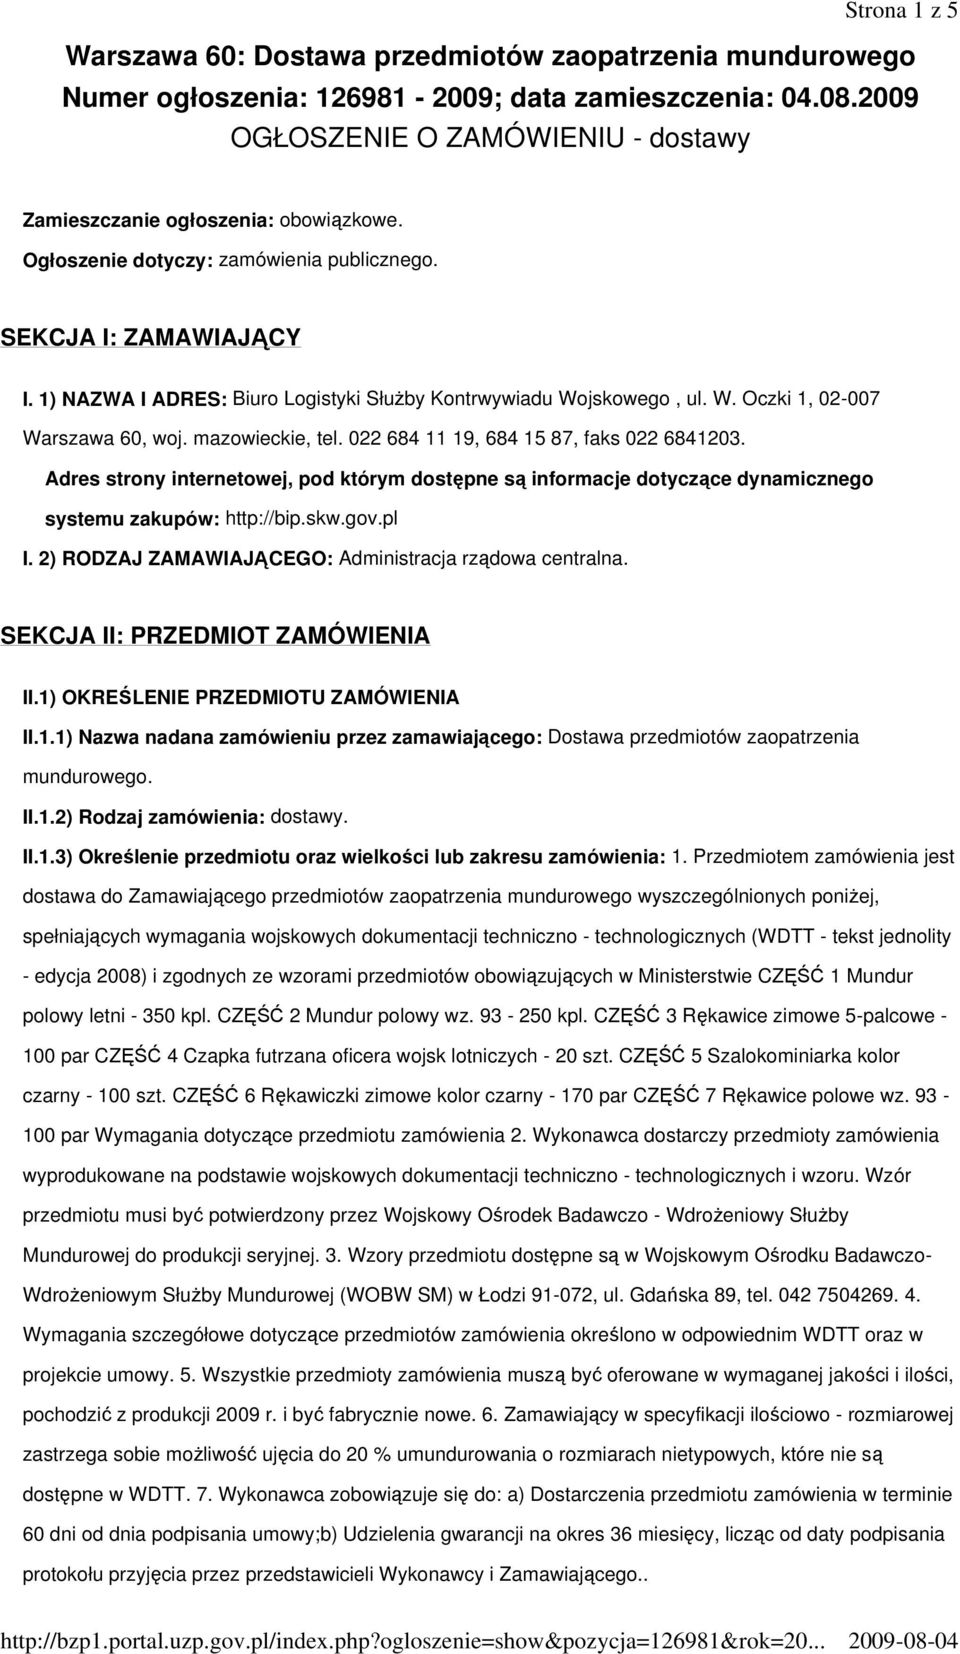 1) NAZWA I ADRES: Biuro Logistyki SłuŜby Kontrwywiadu Wojskowego, ul. W. Oczki 1, 02-007 Warszawa 60, woj. mazowieckie, tel. 022 684 11 19, 684 15 87, faks 022 6841203.